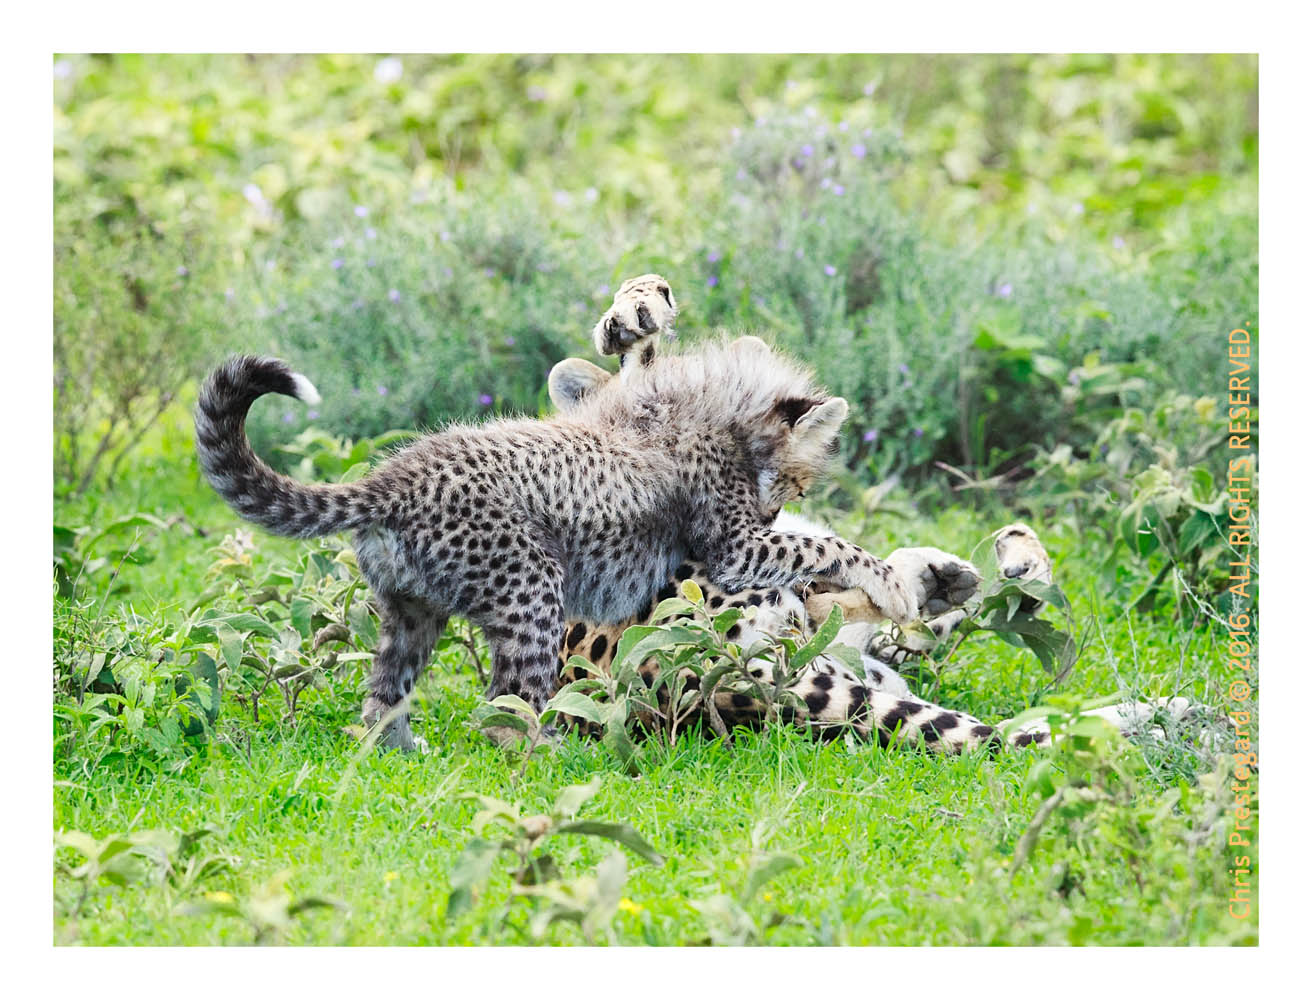 Cheetahs at Ndutu, Tanzania Feb. 2016